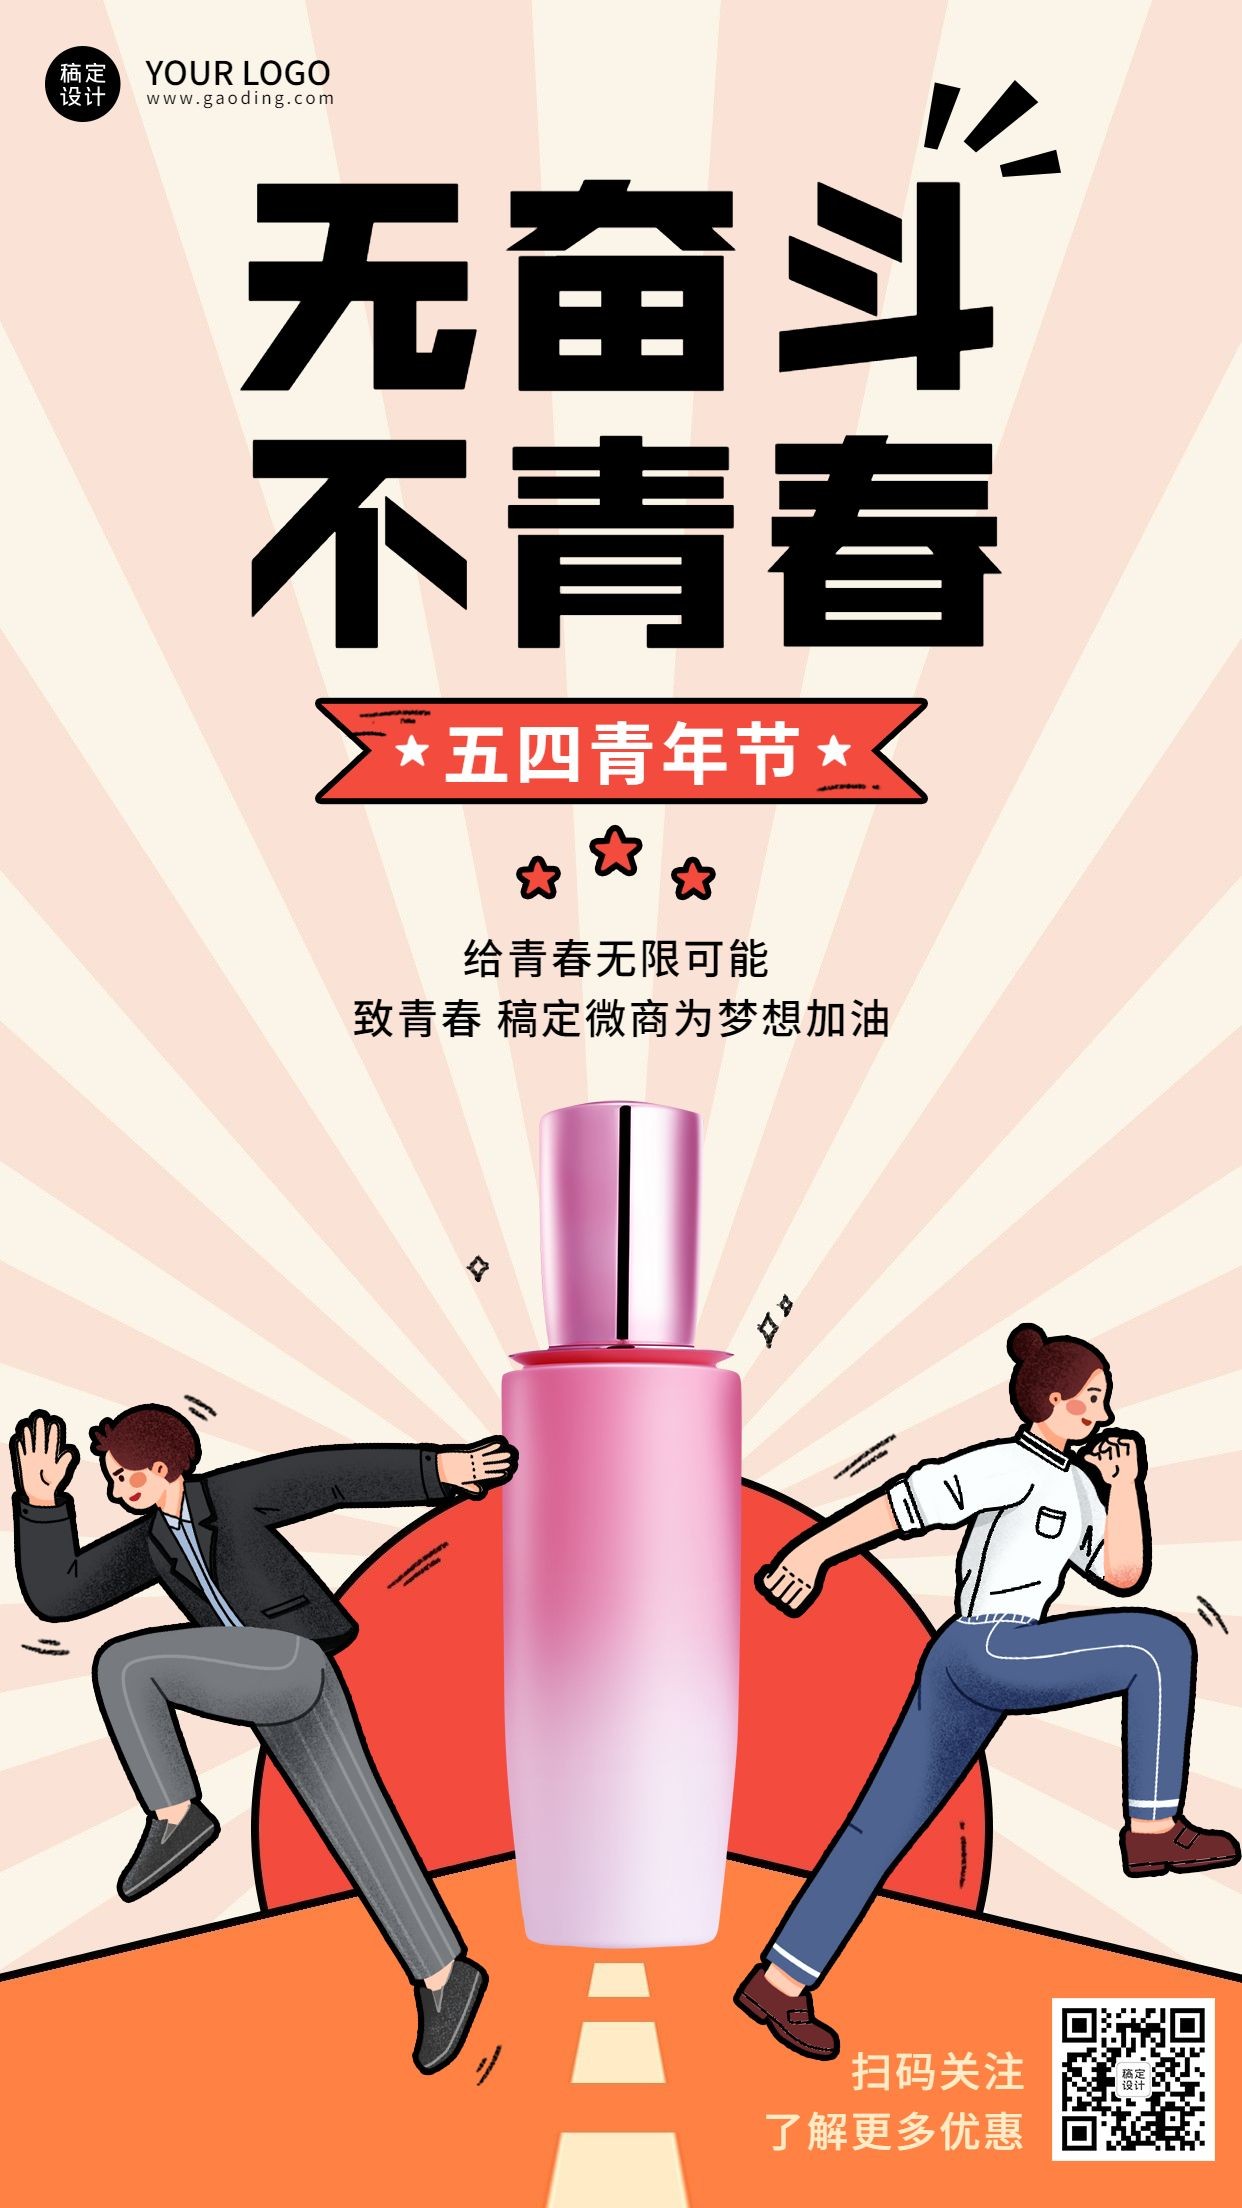 微商五四青年节产品活动营销插画手机海报